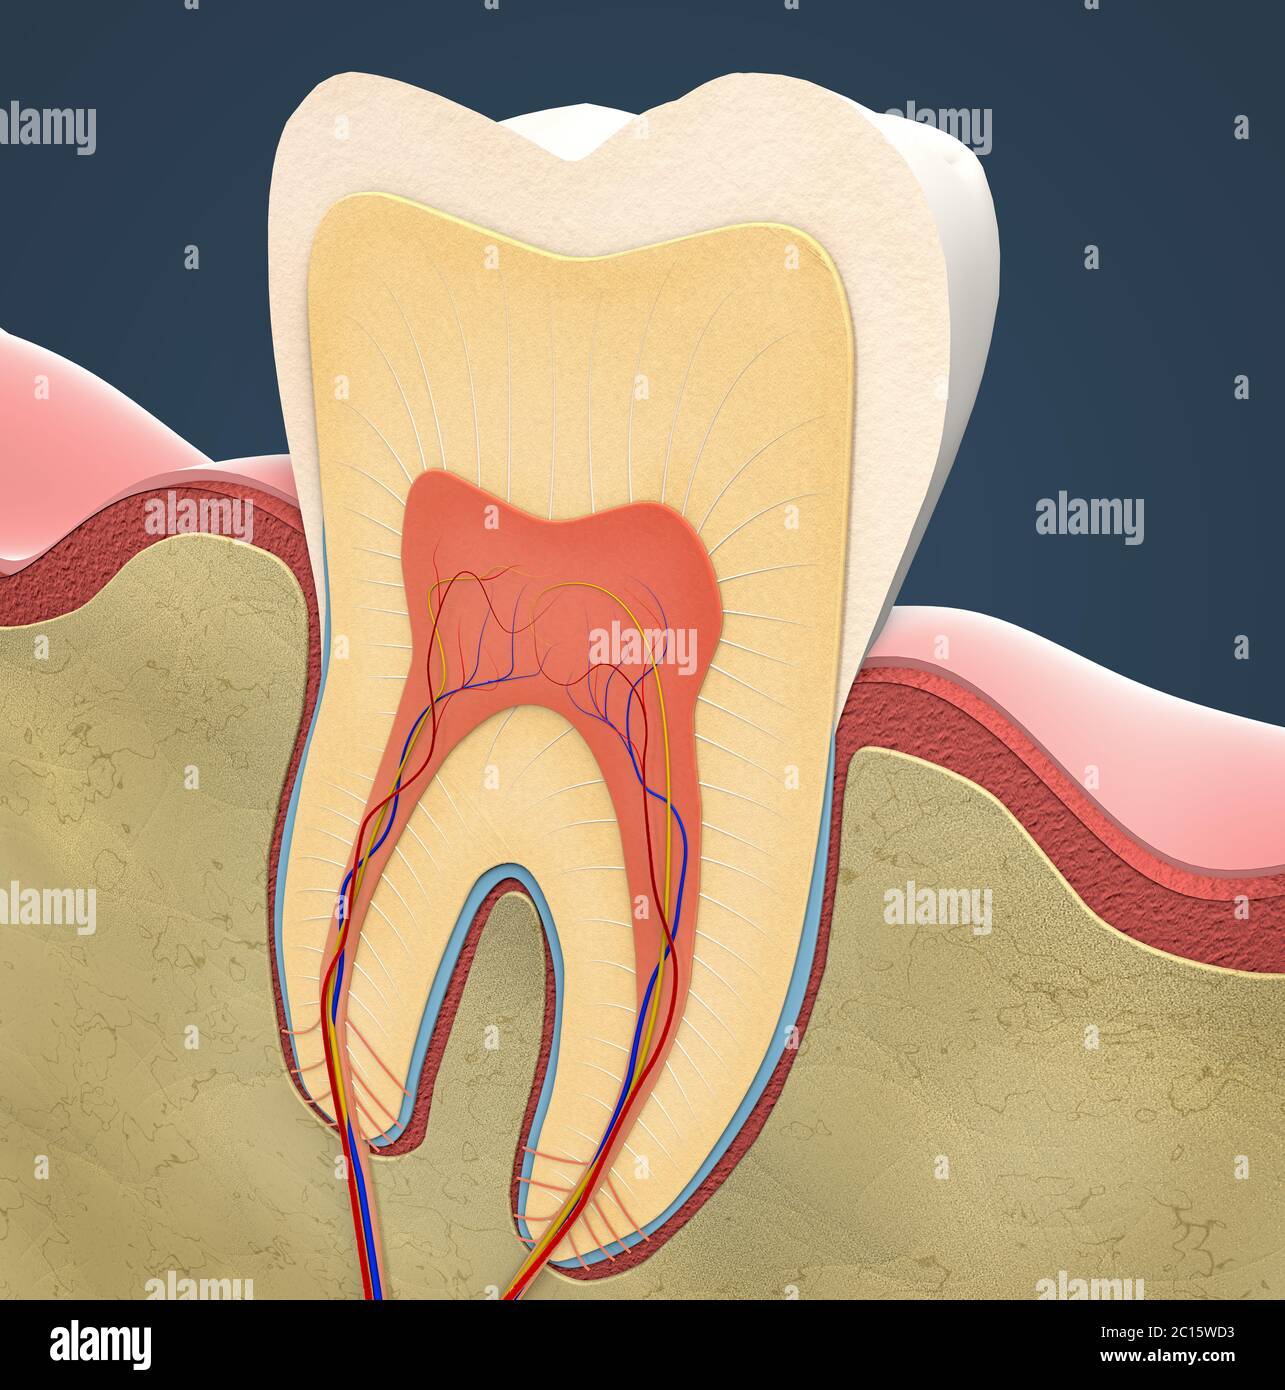 dentine querschnitt anatomie zahn